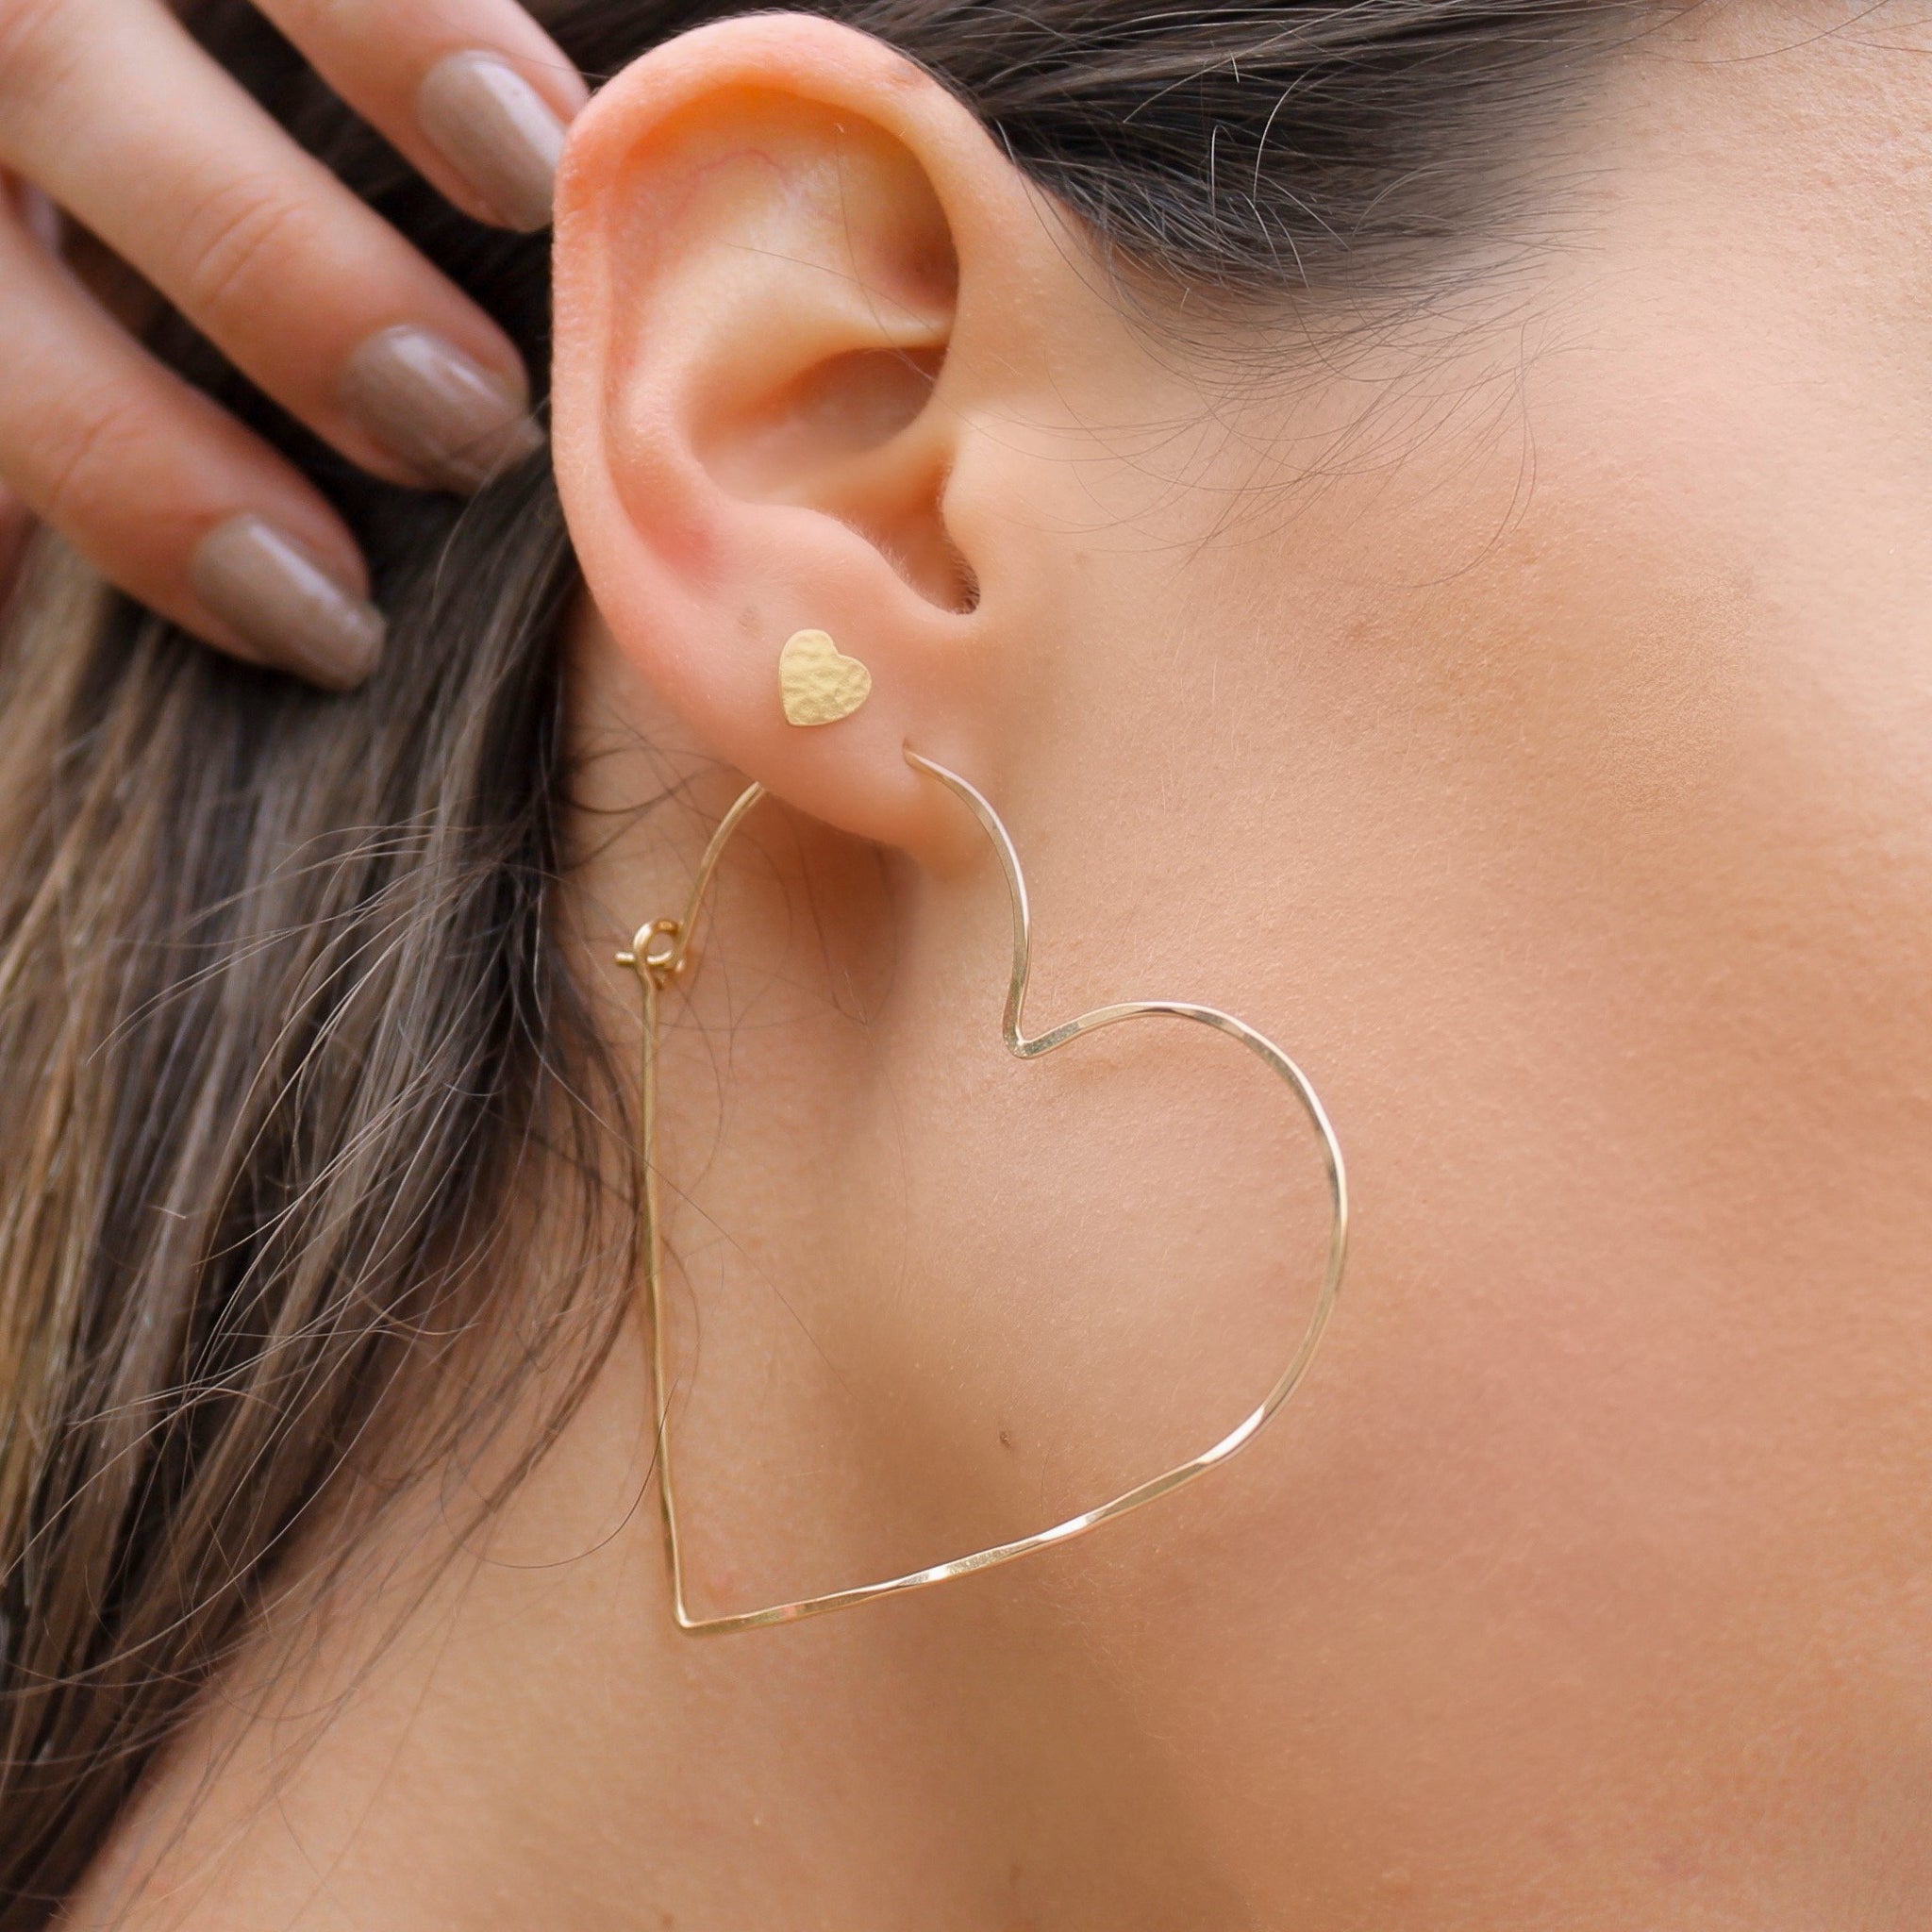 Gold Heart Hoop Earrings, shown on model